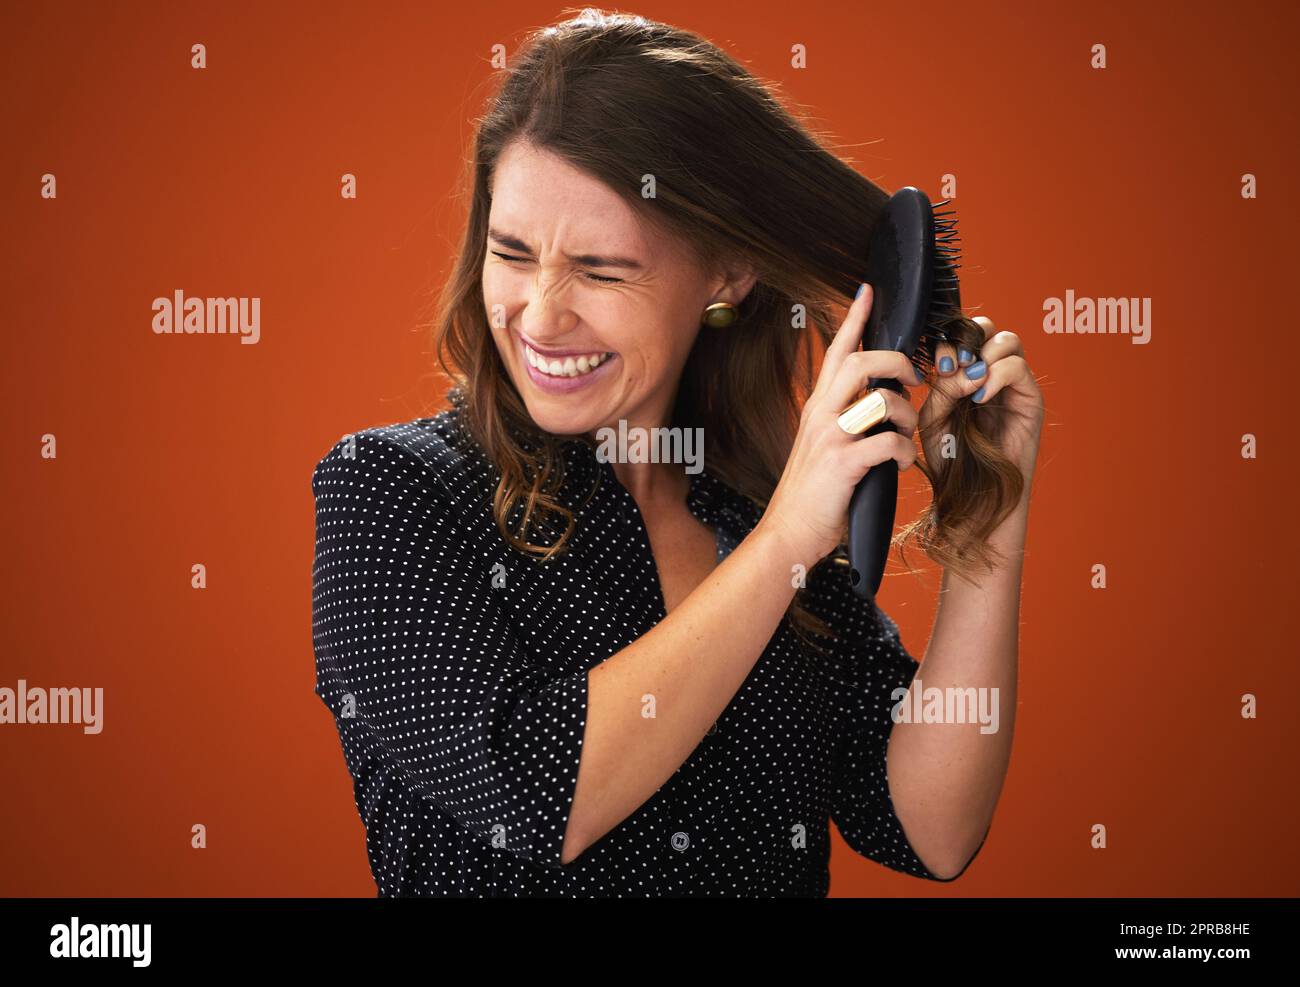 Come ha ottenuto questo nodty. Una giovane donna attraente che si alza su uno sfondo rosso nello studio e che lotta per spazzolarle i capelli. Foto Stock